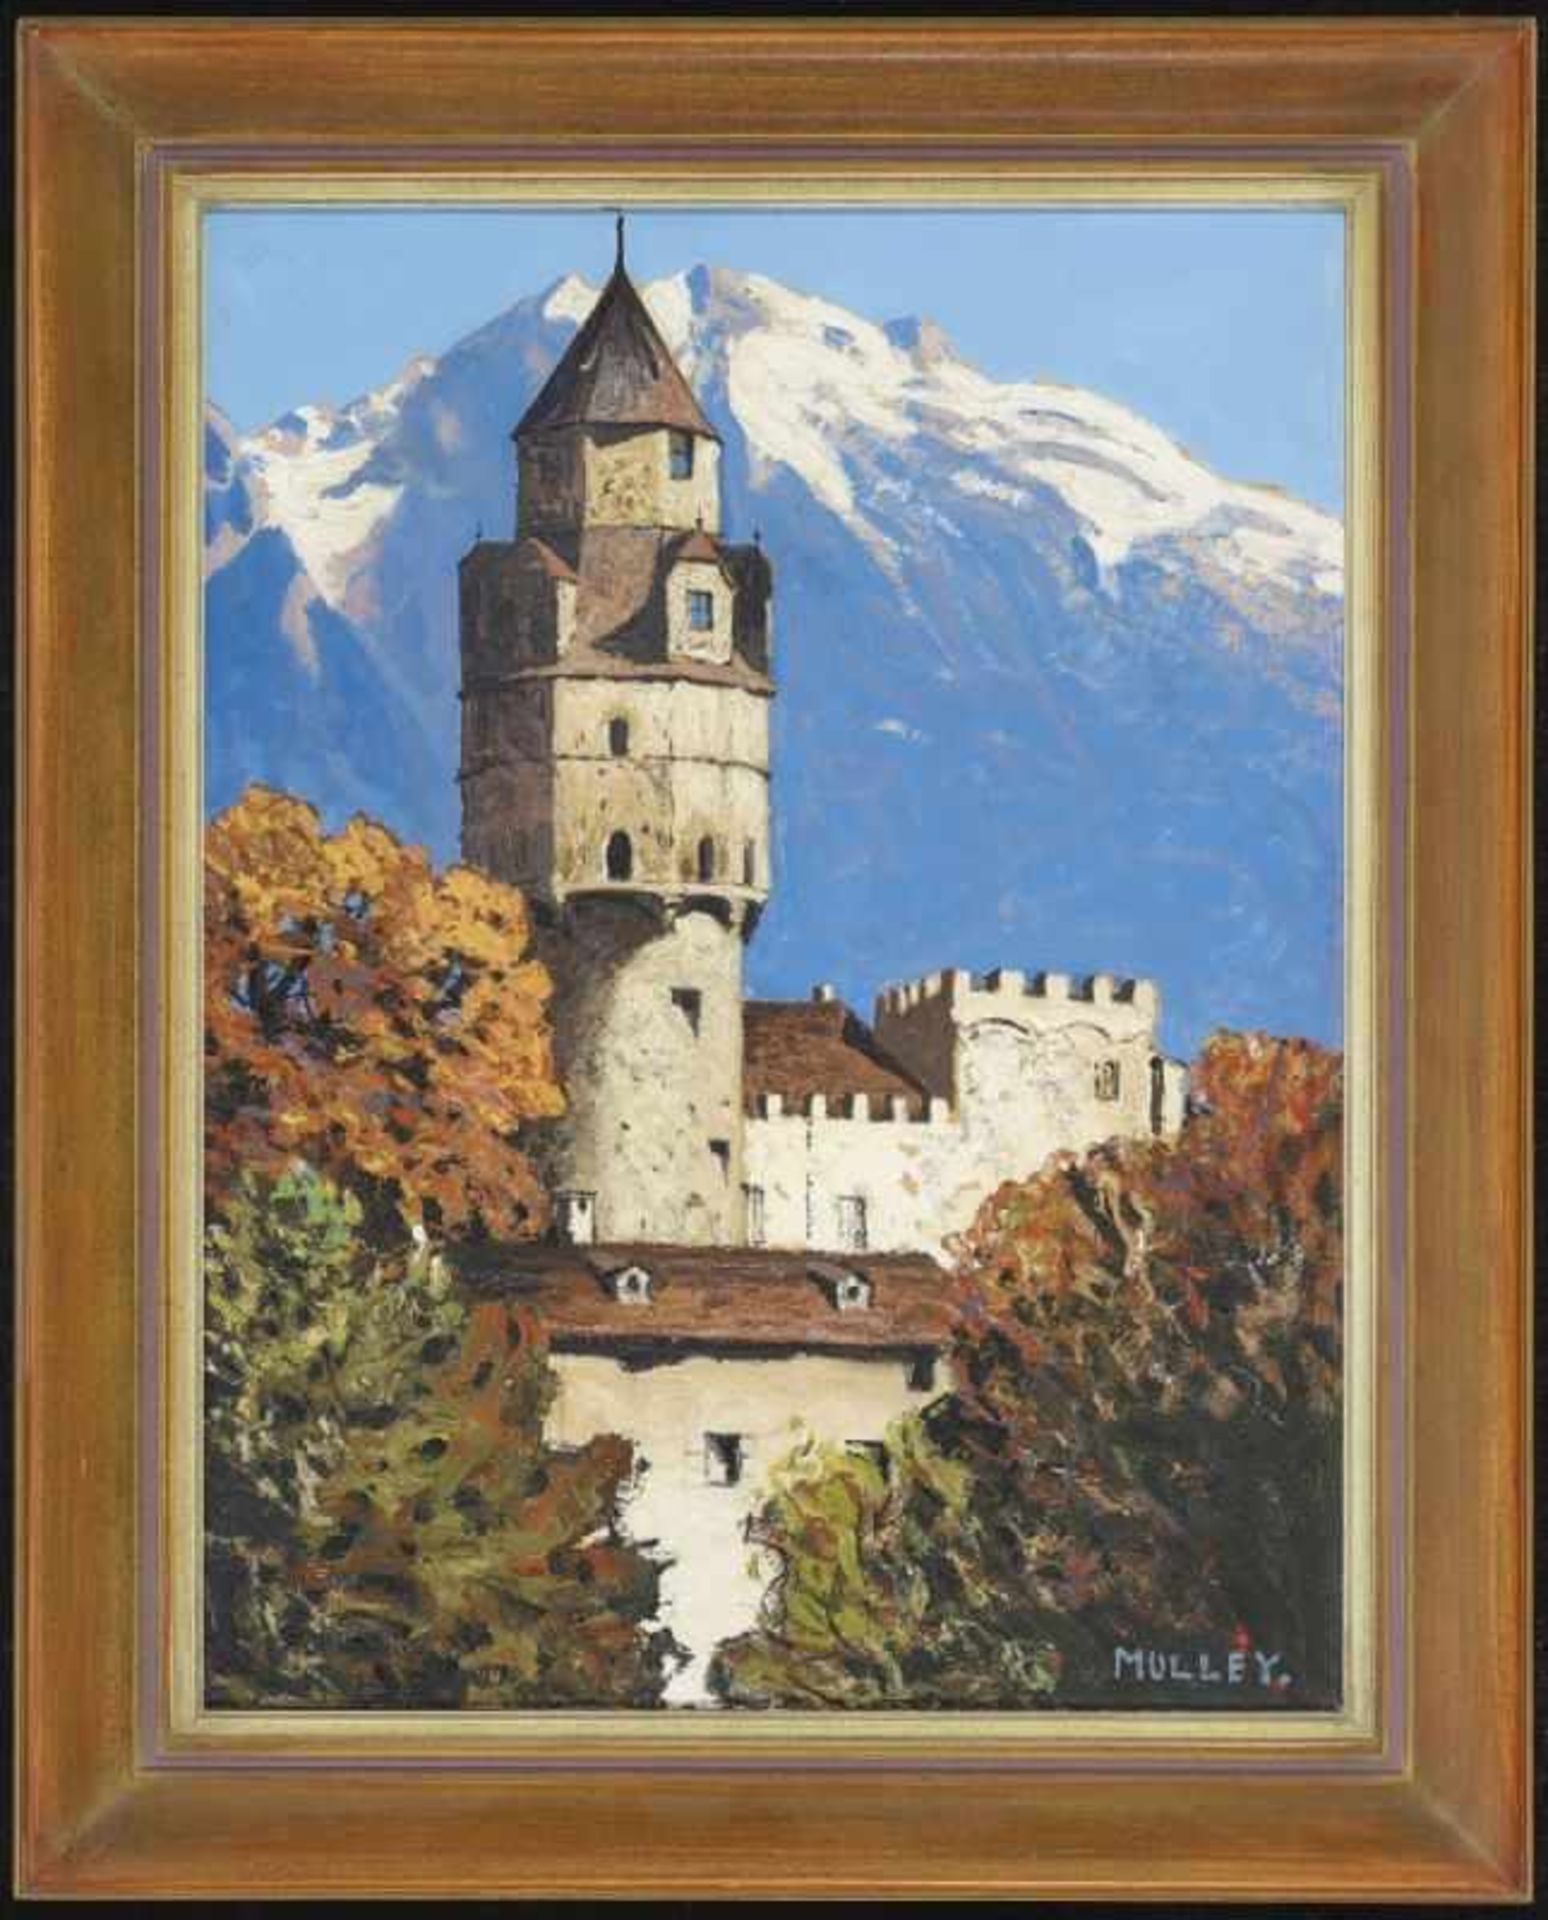 MULLEY, OSKAR 1891 Klagenfurt - 1949 Garmisch-Partenkirchen Blick auf den Münzturm der Burg Hasegg - Bild 2 aus 3